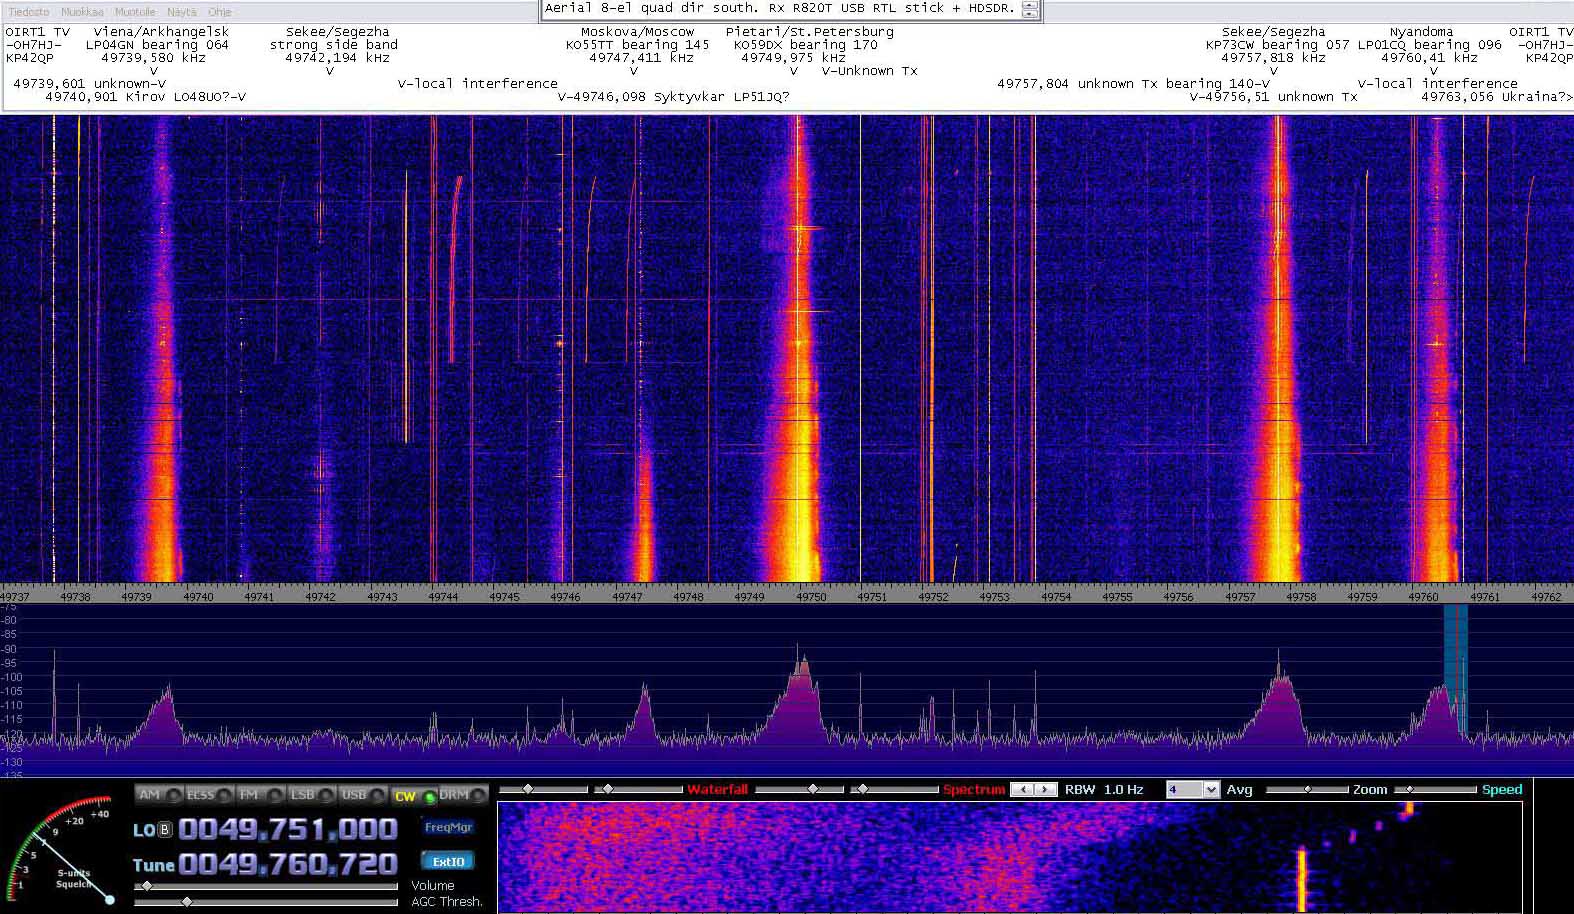 2014-01-01-11 - 49750 kHz OIRT1 TV - Aurora main flares rising - Nyandoma high side flare - 8-el quagi dir S - (c) OH7HJ.JPG